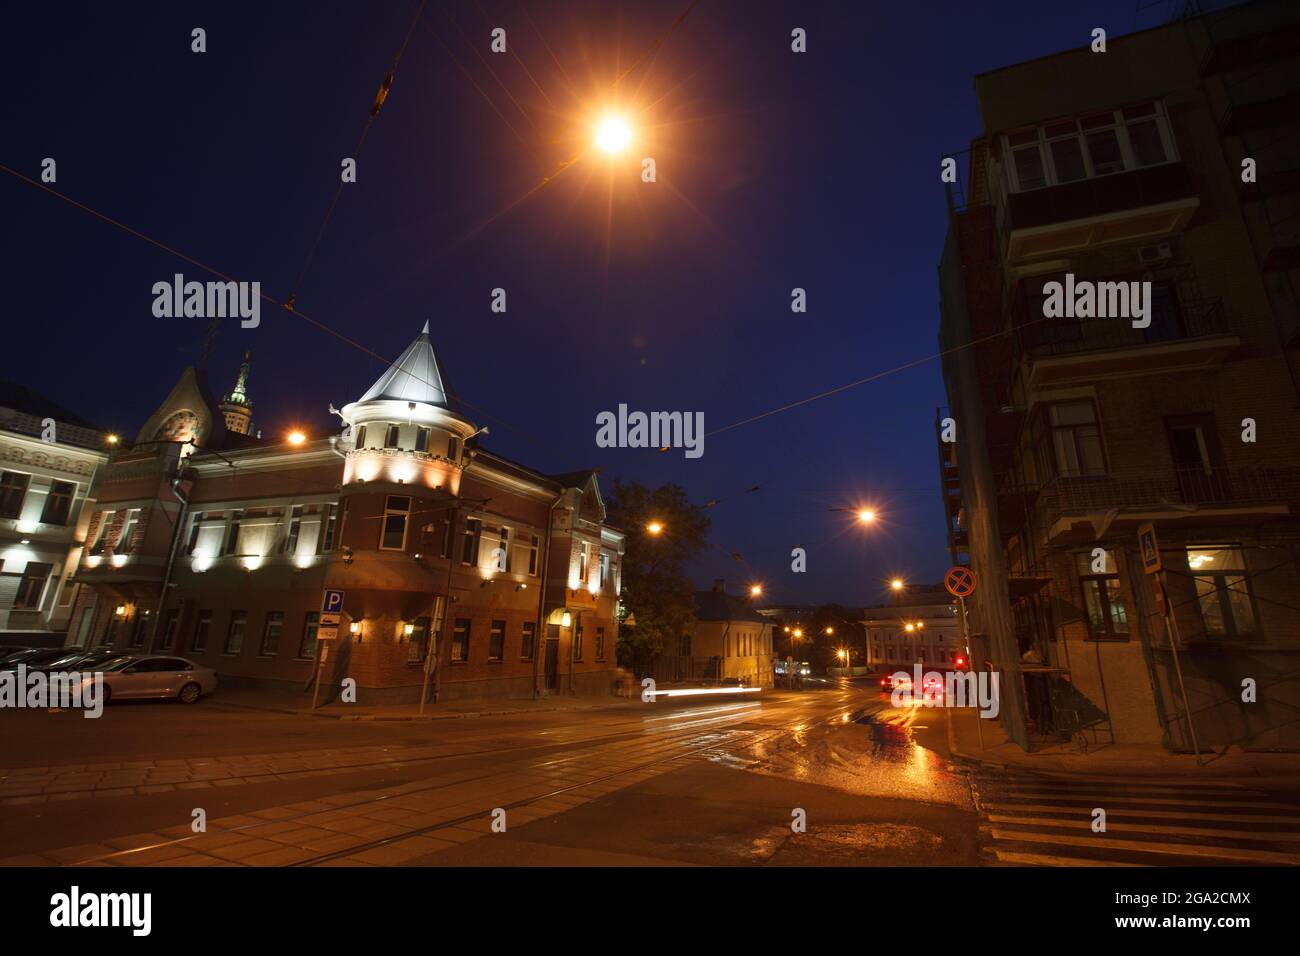 Moscou, Russie - juillet 27 2014 : bâtiments historiques dans le centre de Moscou la nuit. Hôtel particulier sur le boulevard Yauza. Rails de tram et traces légères au premier plan Banque D'Images